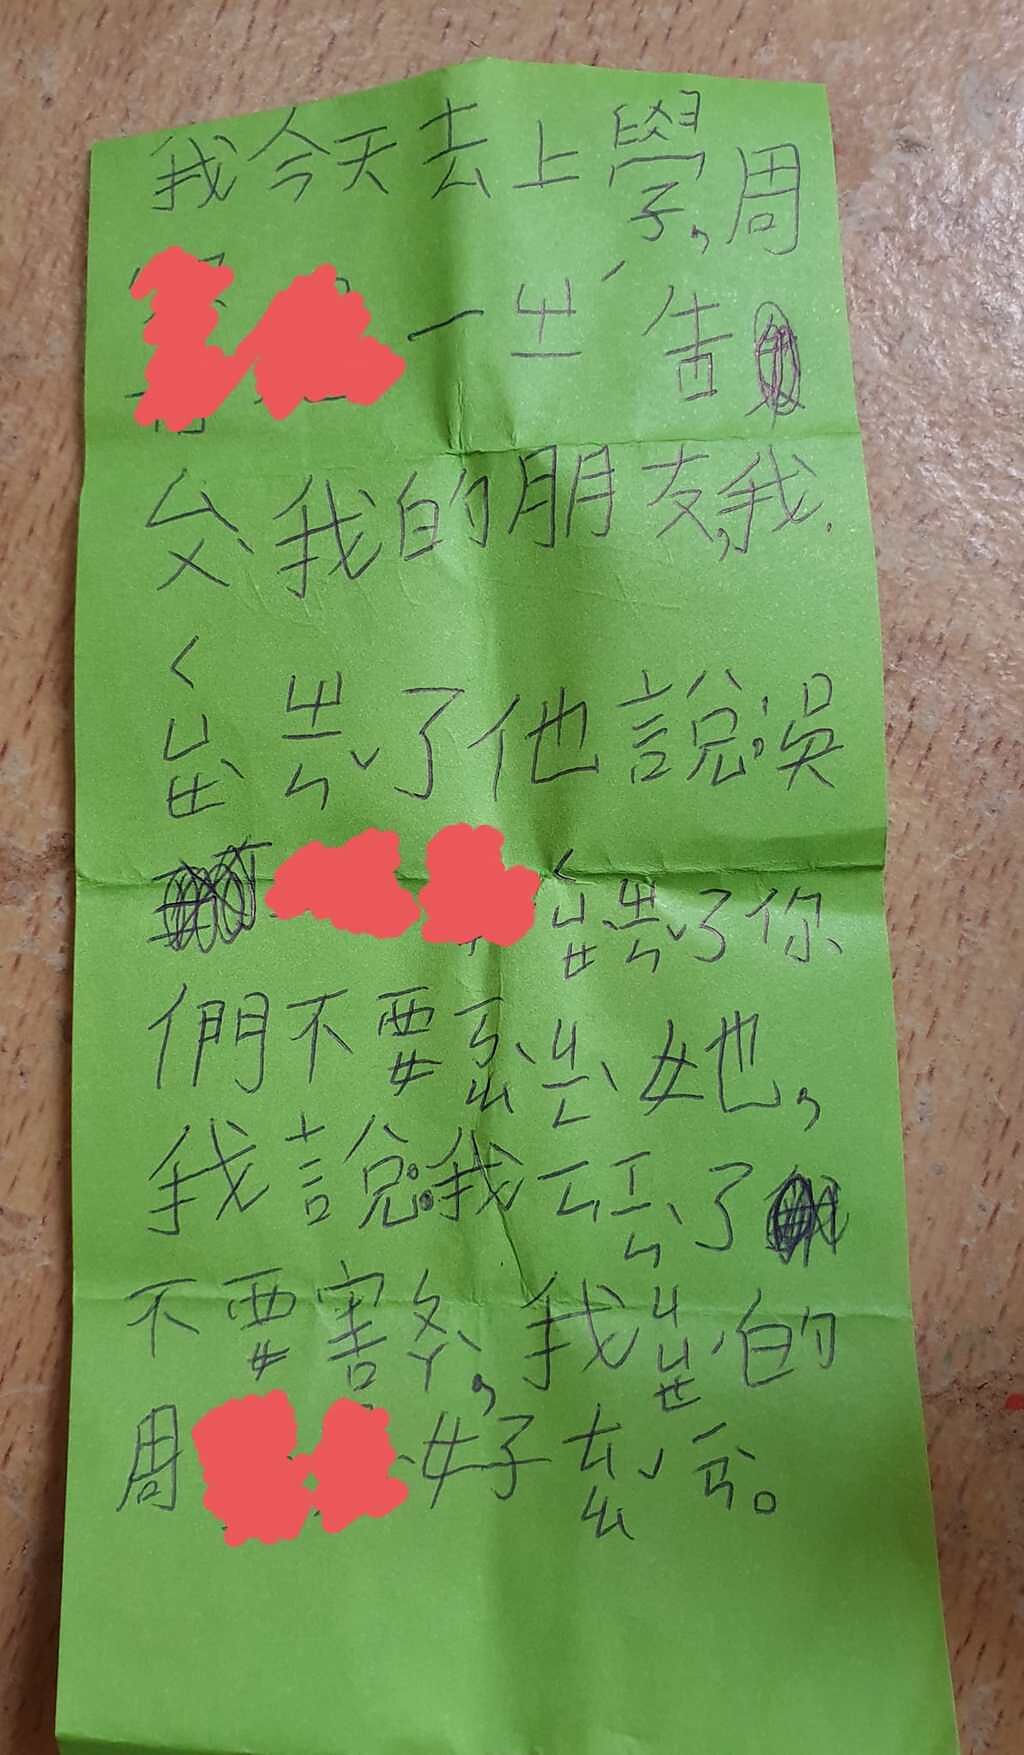 小孩寫字條抱怨同學因為他確診過而排擠他。(翻攝自 爆廢公社)